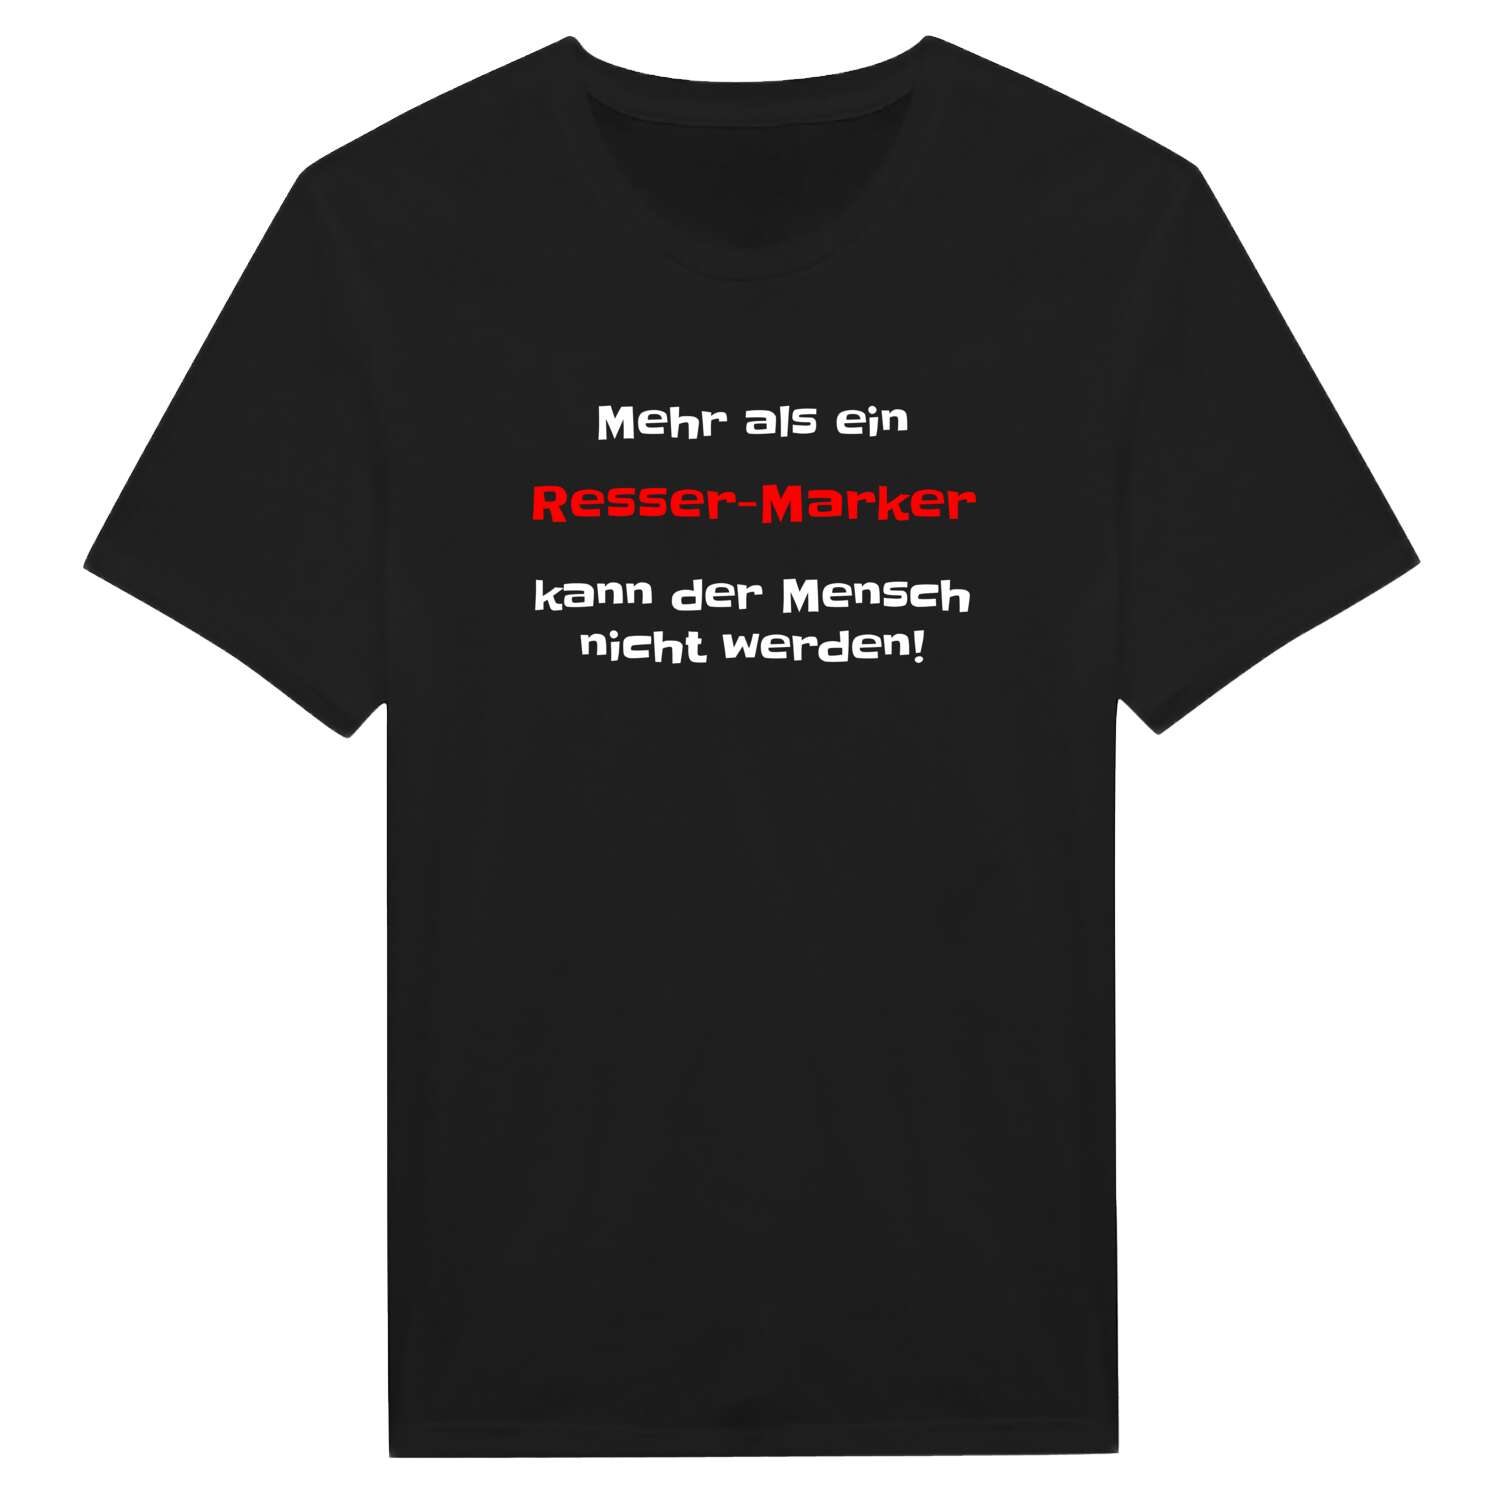 Resser-Mark T-Shirt »Mehr als ein«